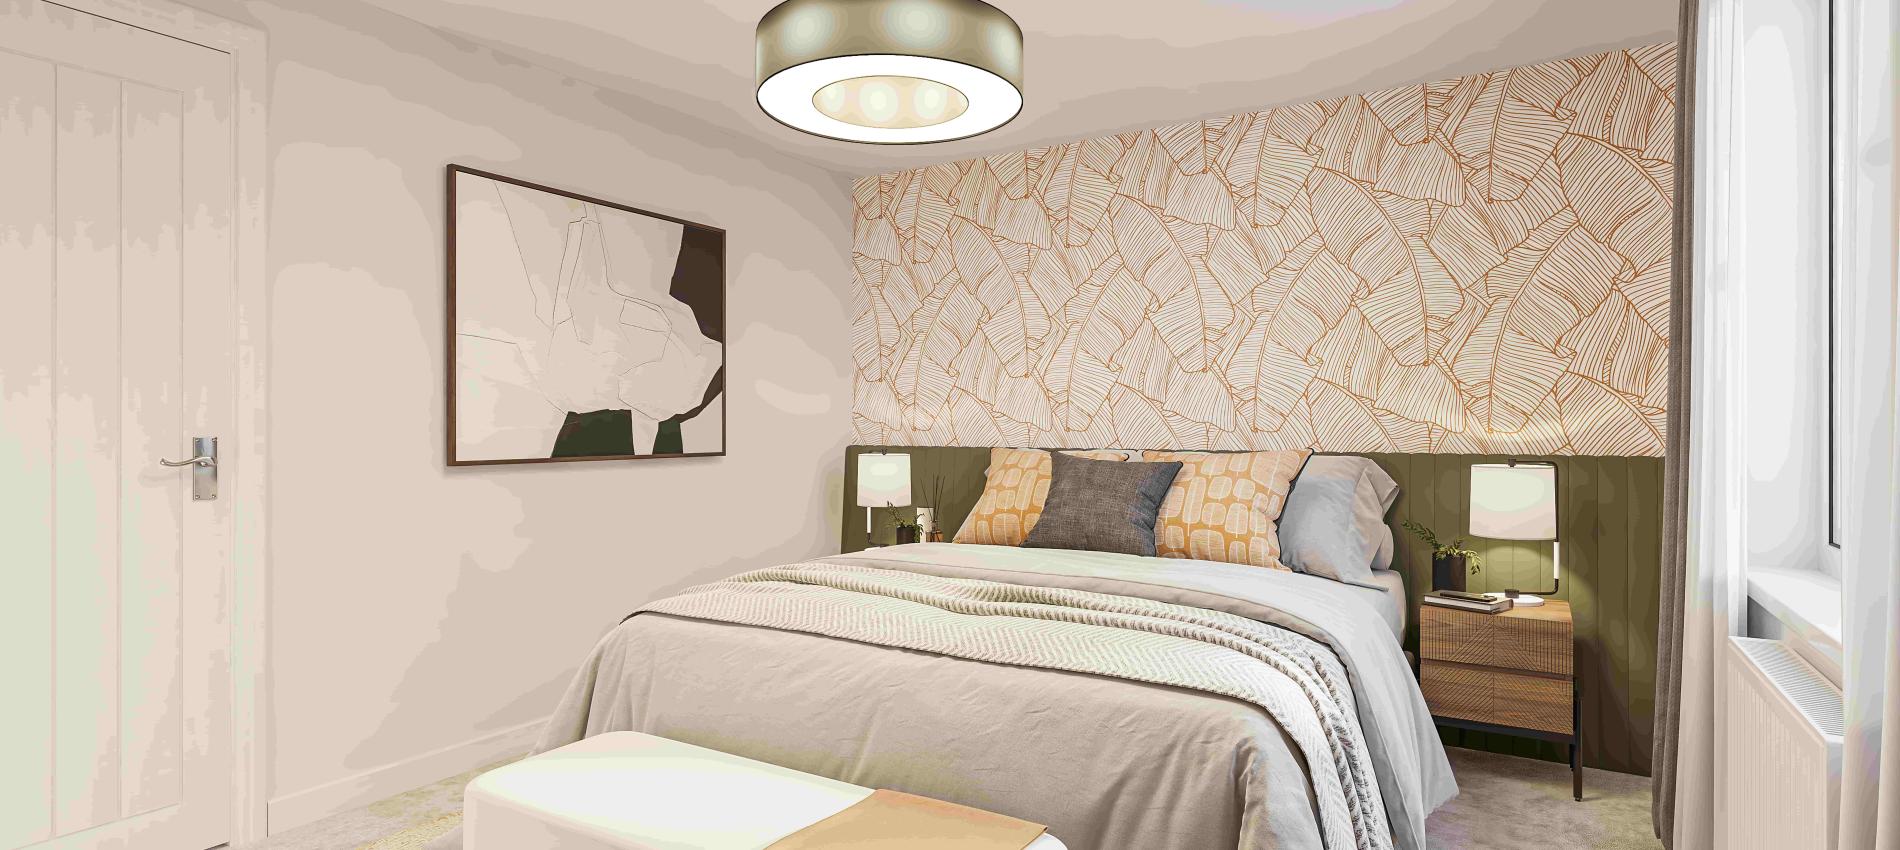 Kestrel Fields Show Home Bedroom